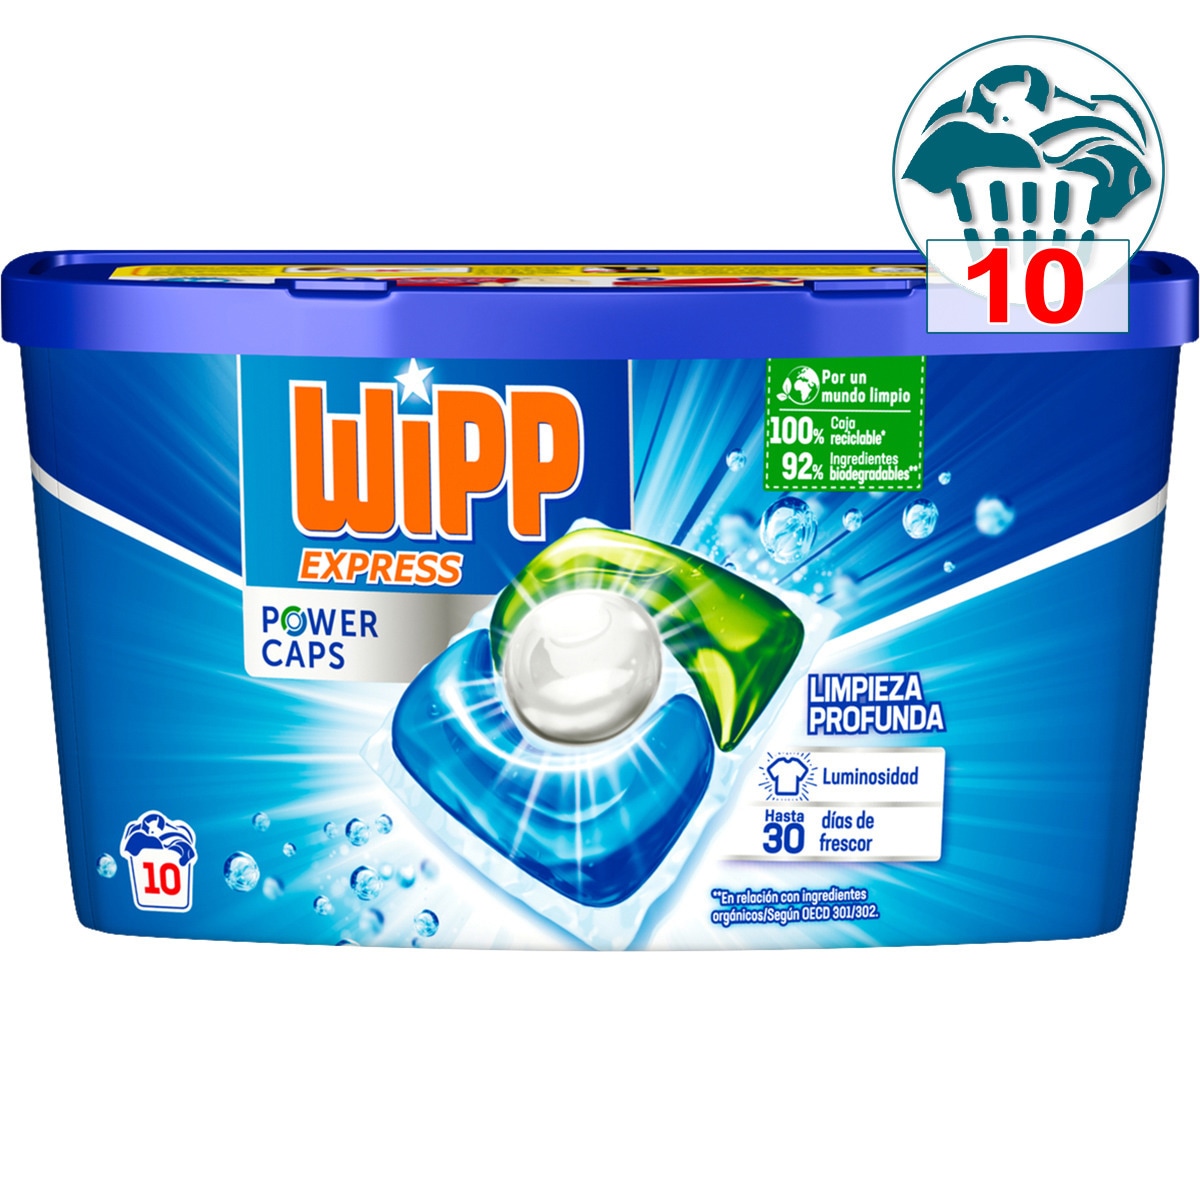 WIPP EXPRESS Detergente para ropa en polvo 40 lavados